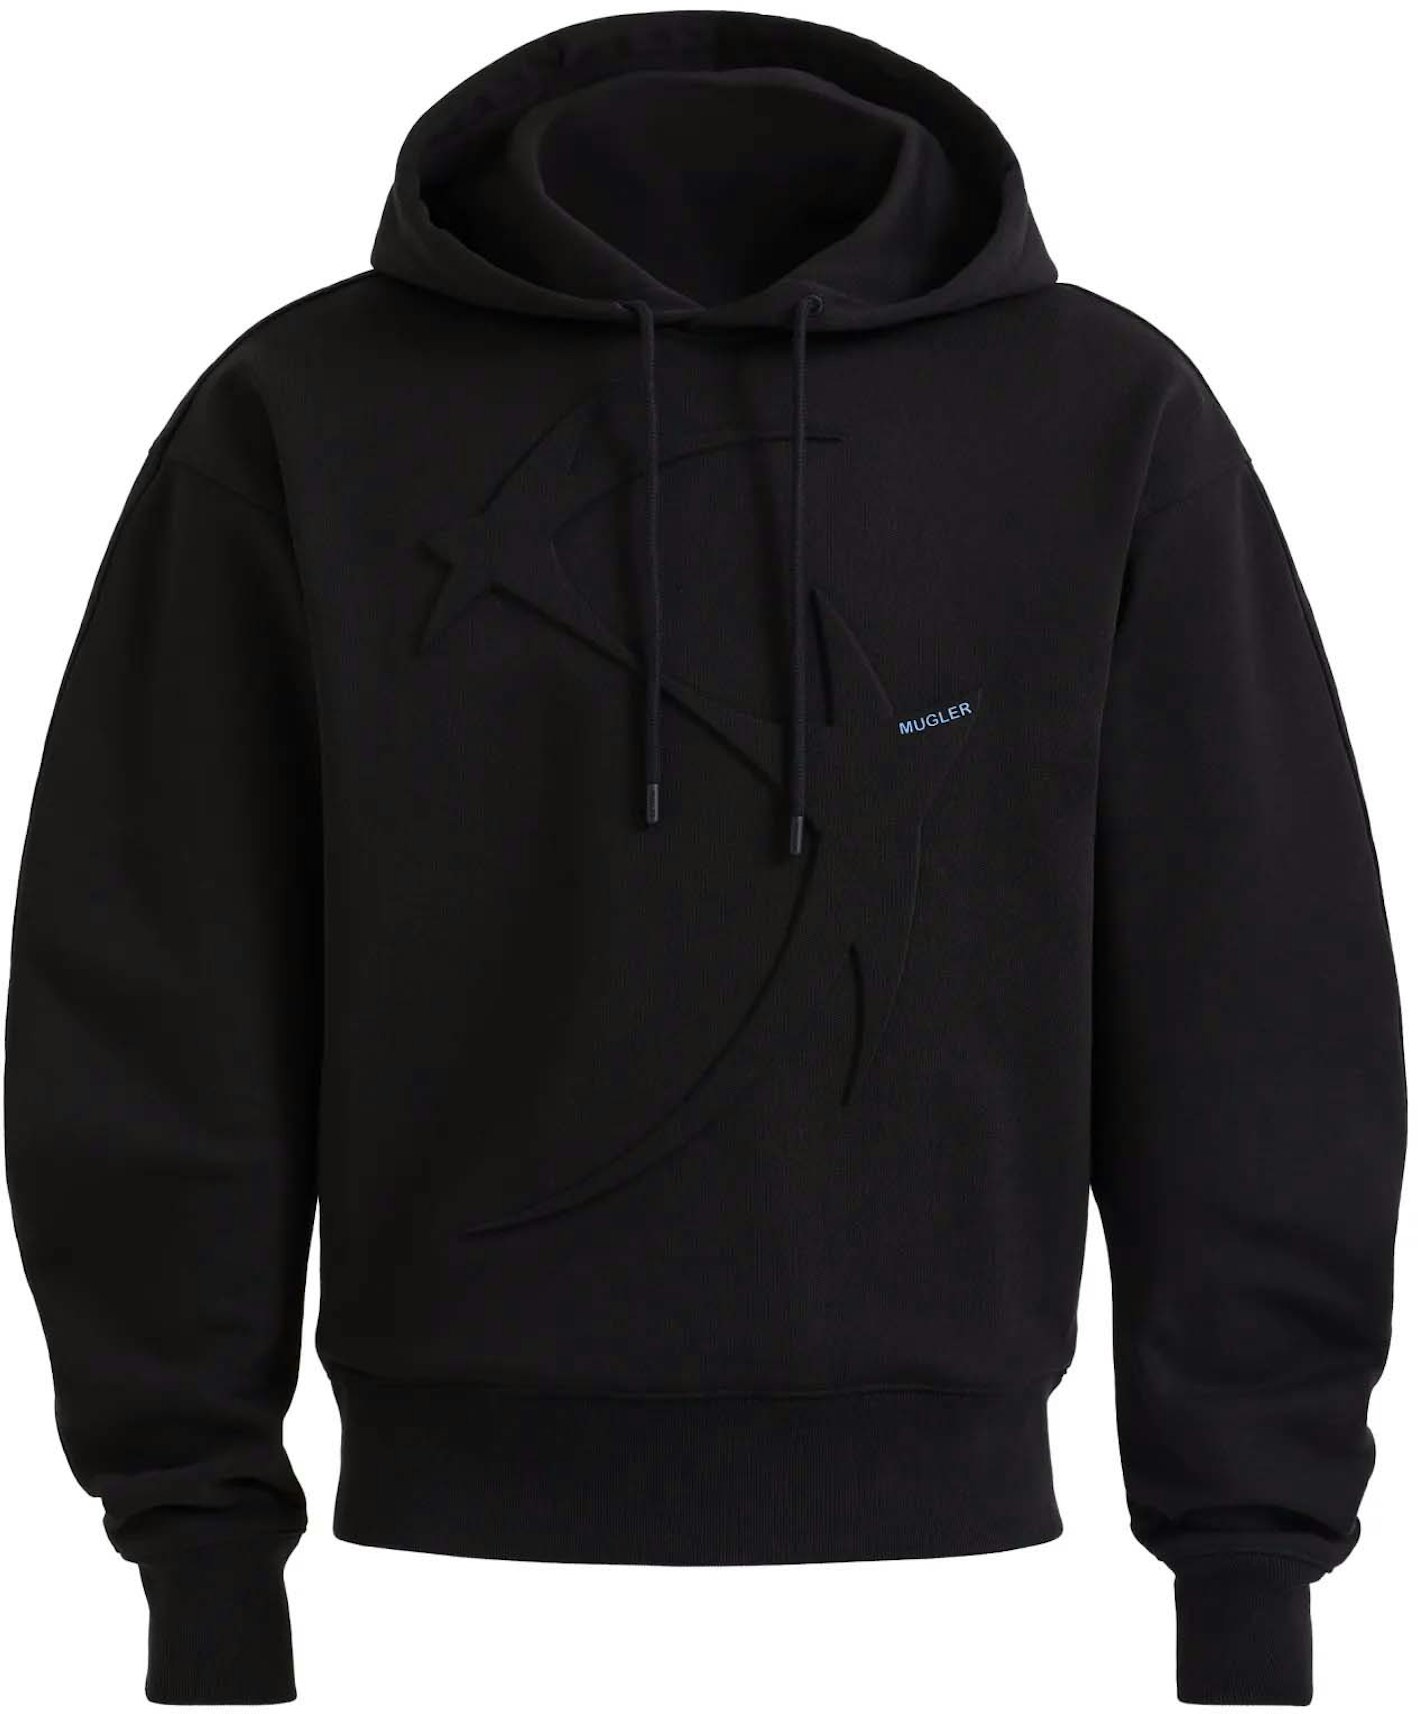 hoodie noir h&m